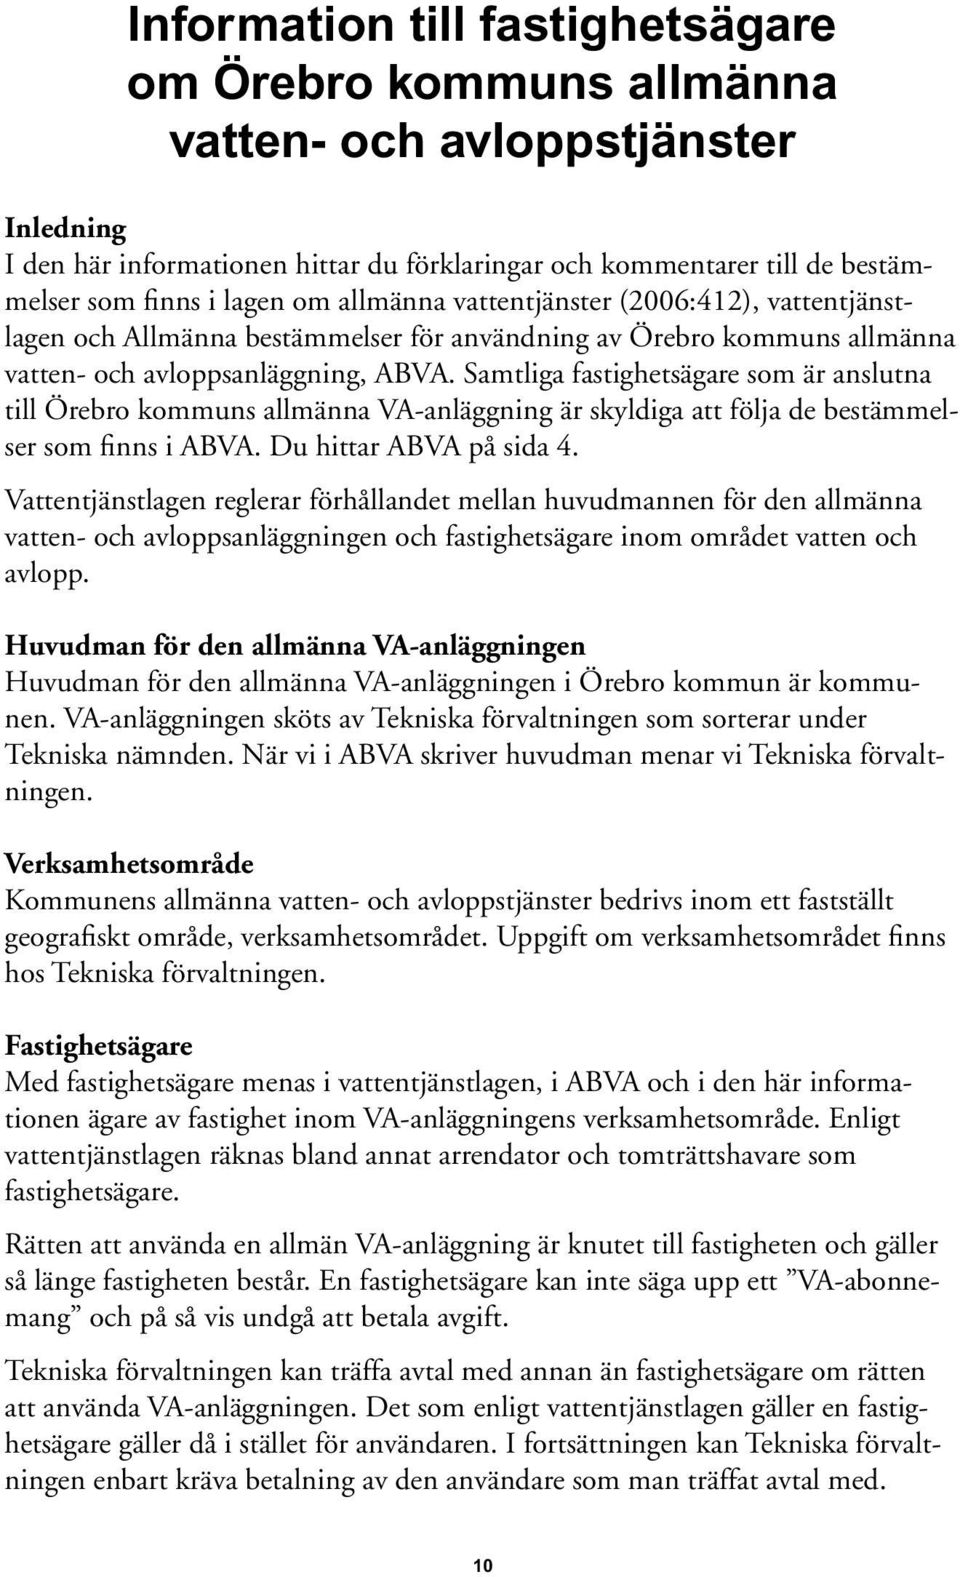 Samtliga fastighetsägare som är anslutna till Örebro kommuns allmänna VA-anläggning är skyldiga att följa de bestämmelser som finns i ABVA. Du hittar ABVA på sida 4.